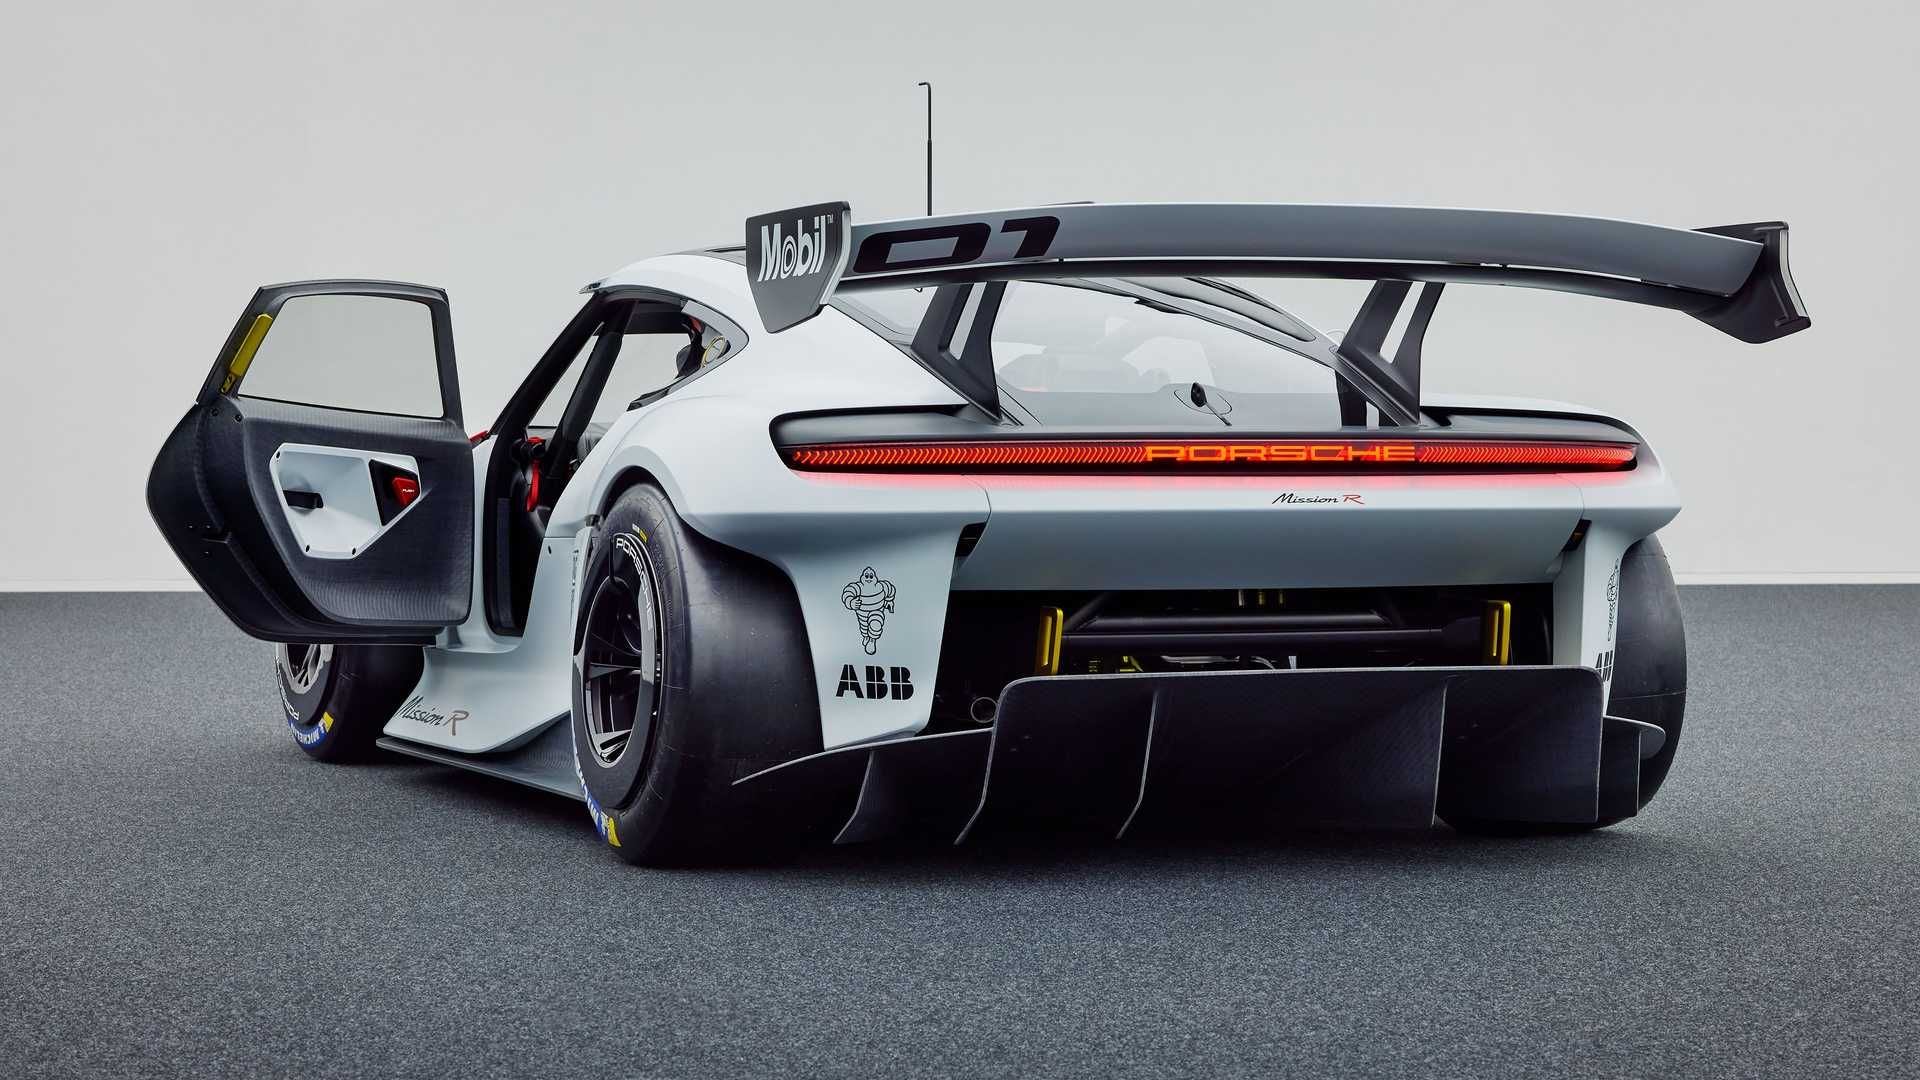 دیفیوزر و بال عقب خودروی الکتریکی مفهومی پورشه میشن آر / Porsche Mission R Concept EV